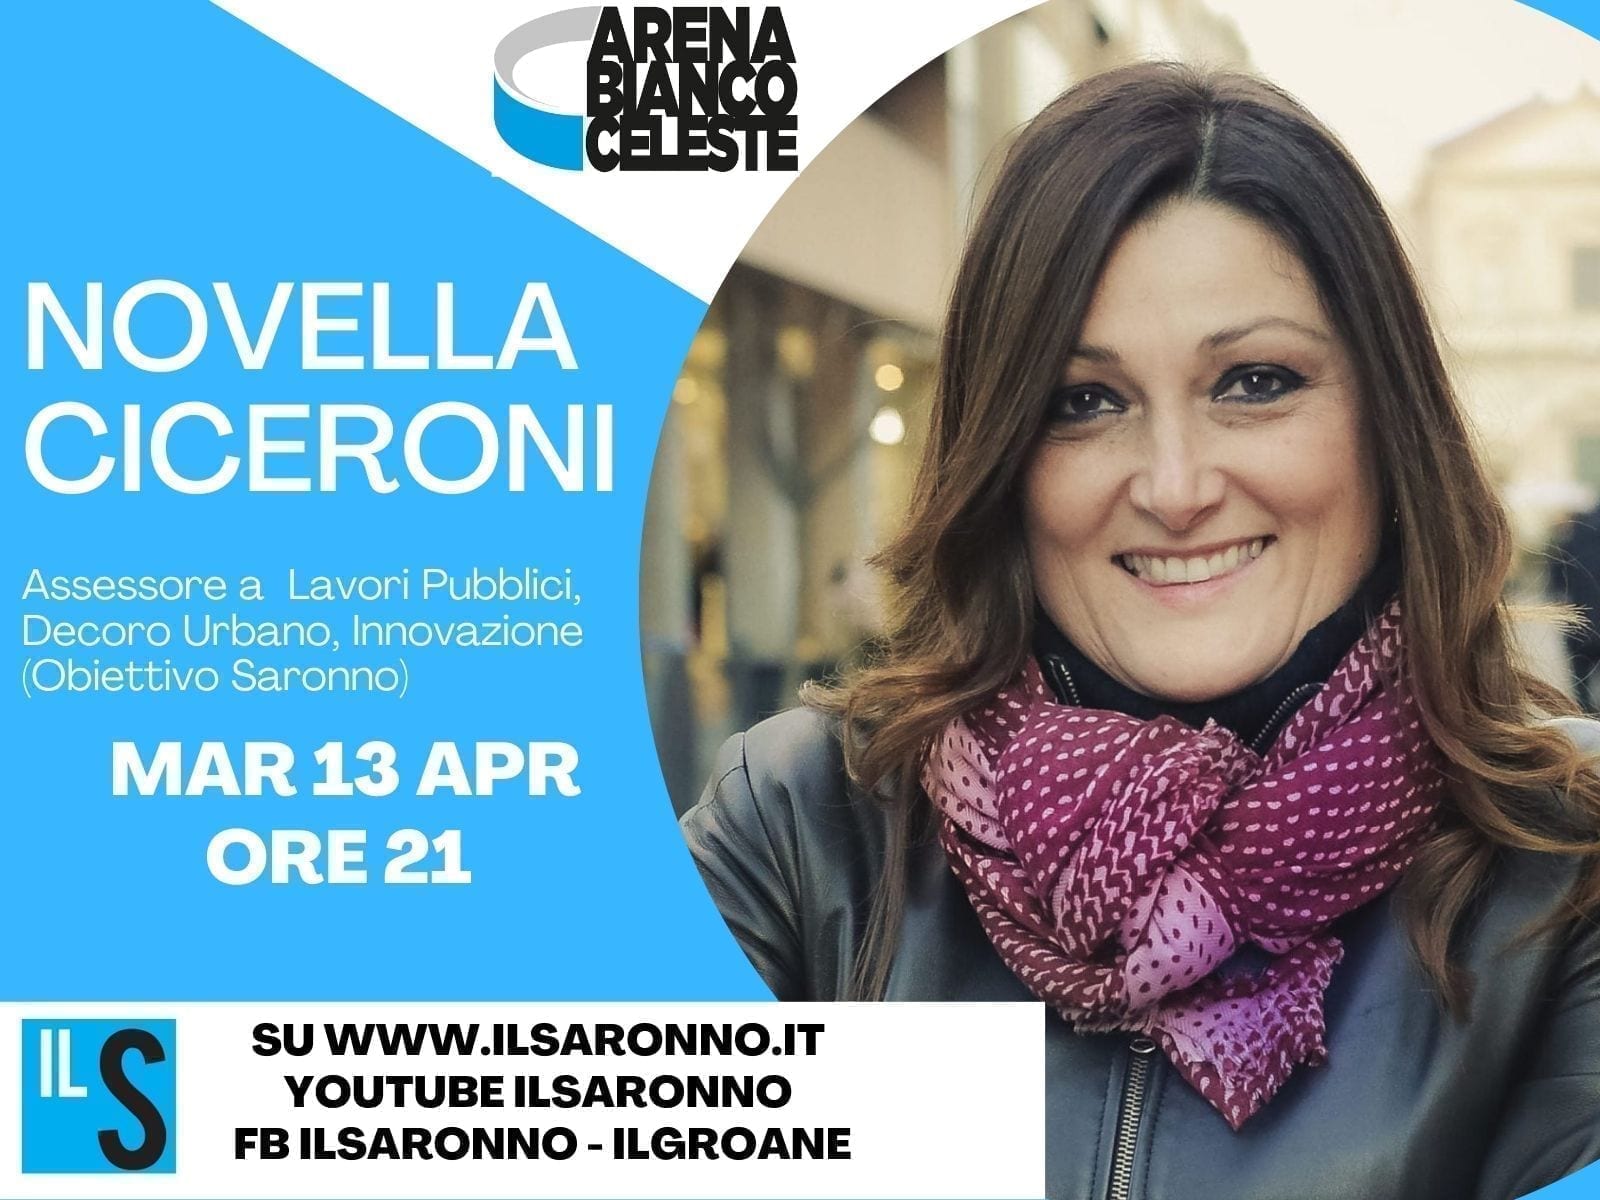 L’assessore Novella Ciceroni (Obiettivo Saronno) protagonista all’Abc: stasera live alle 21